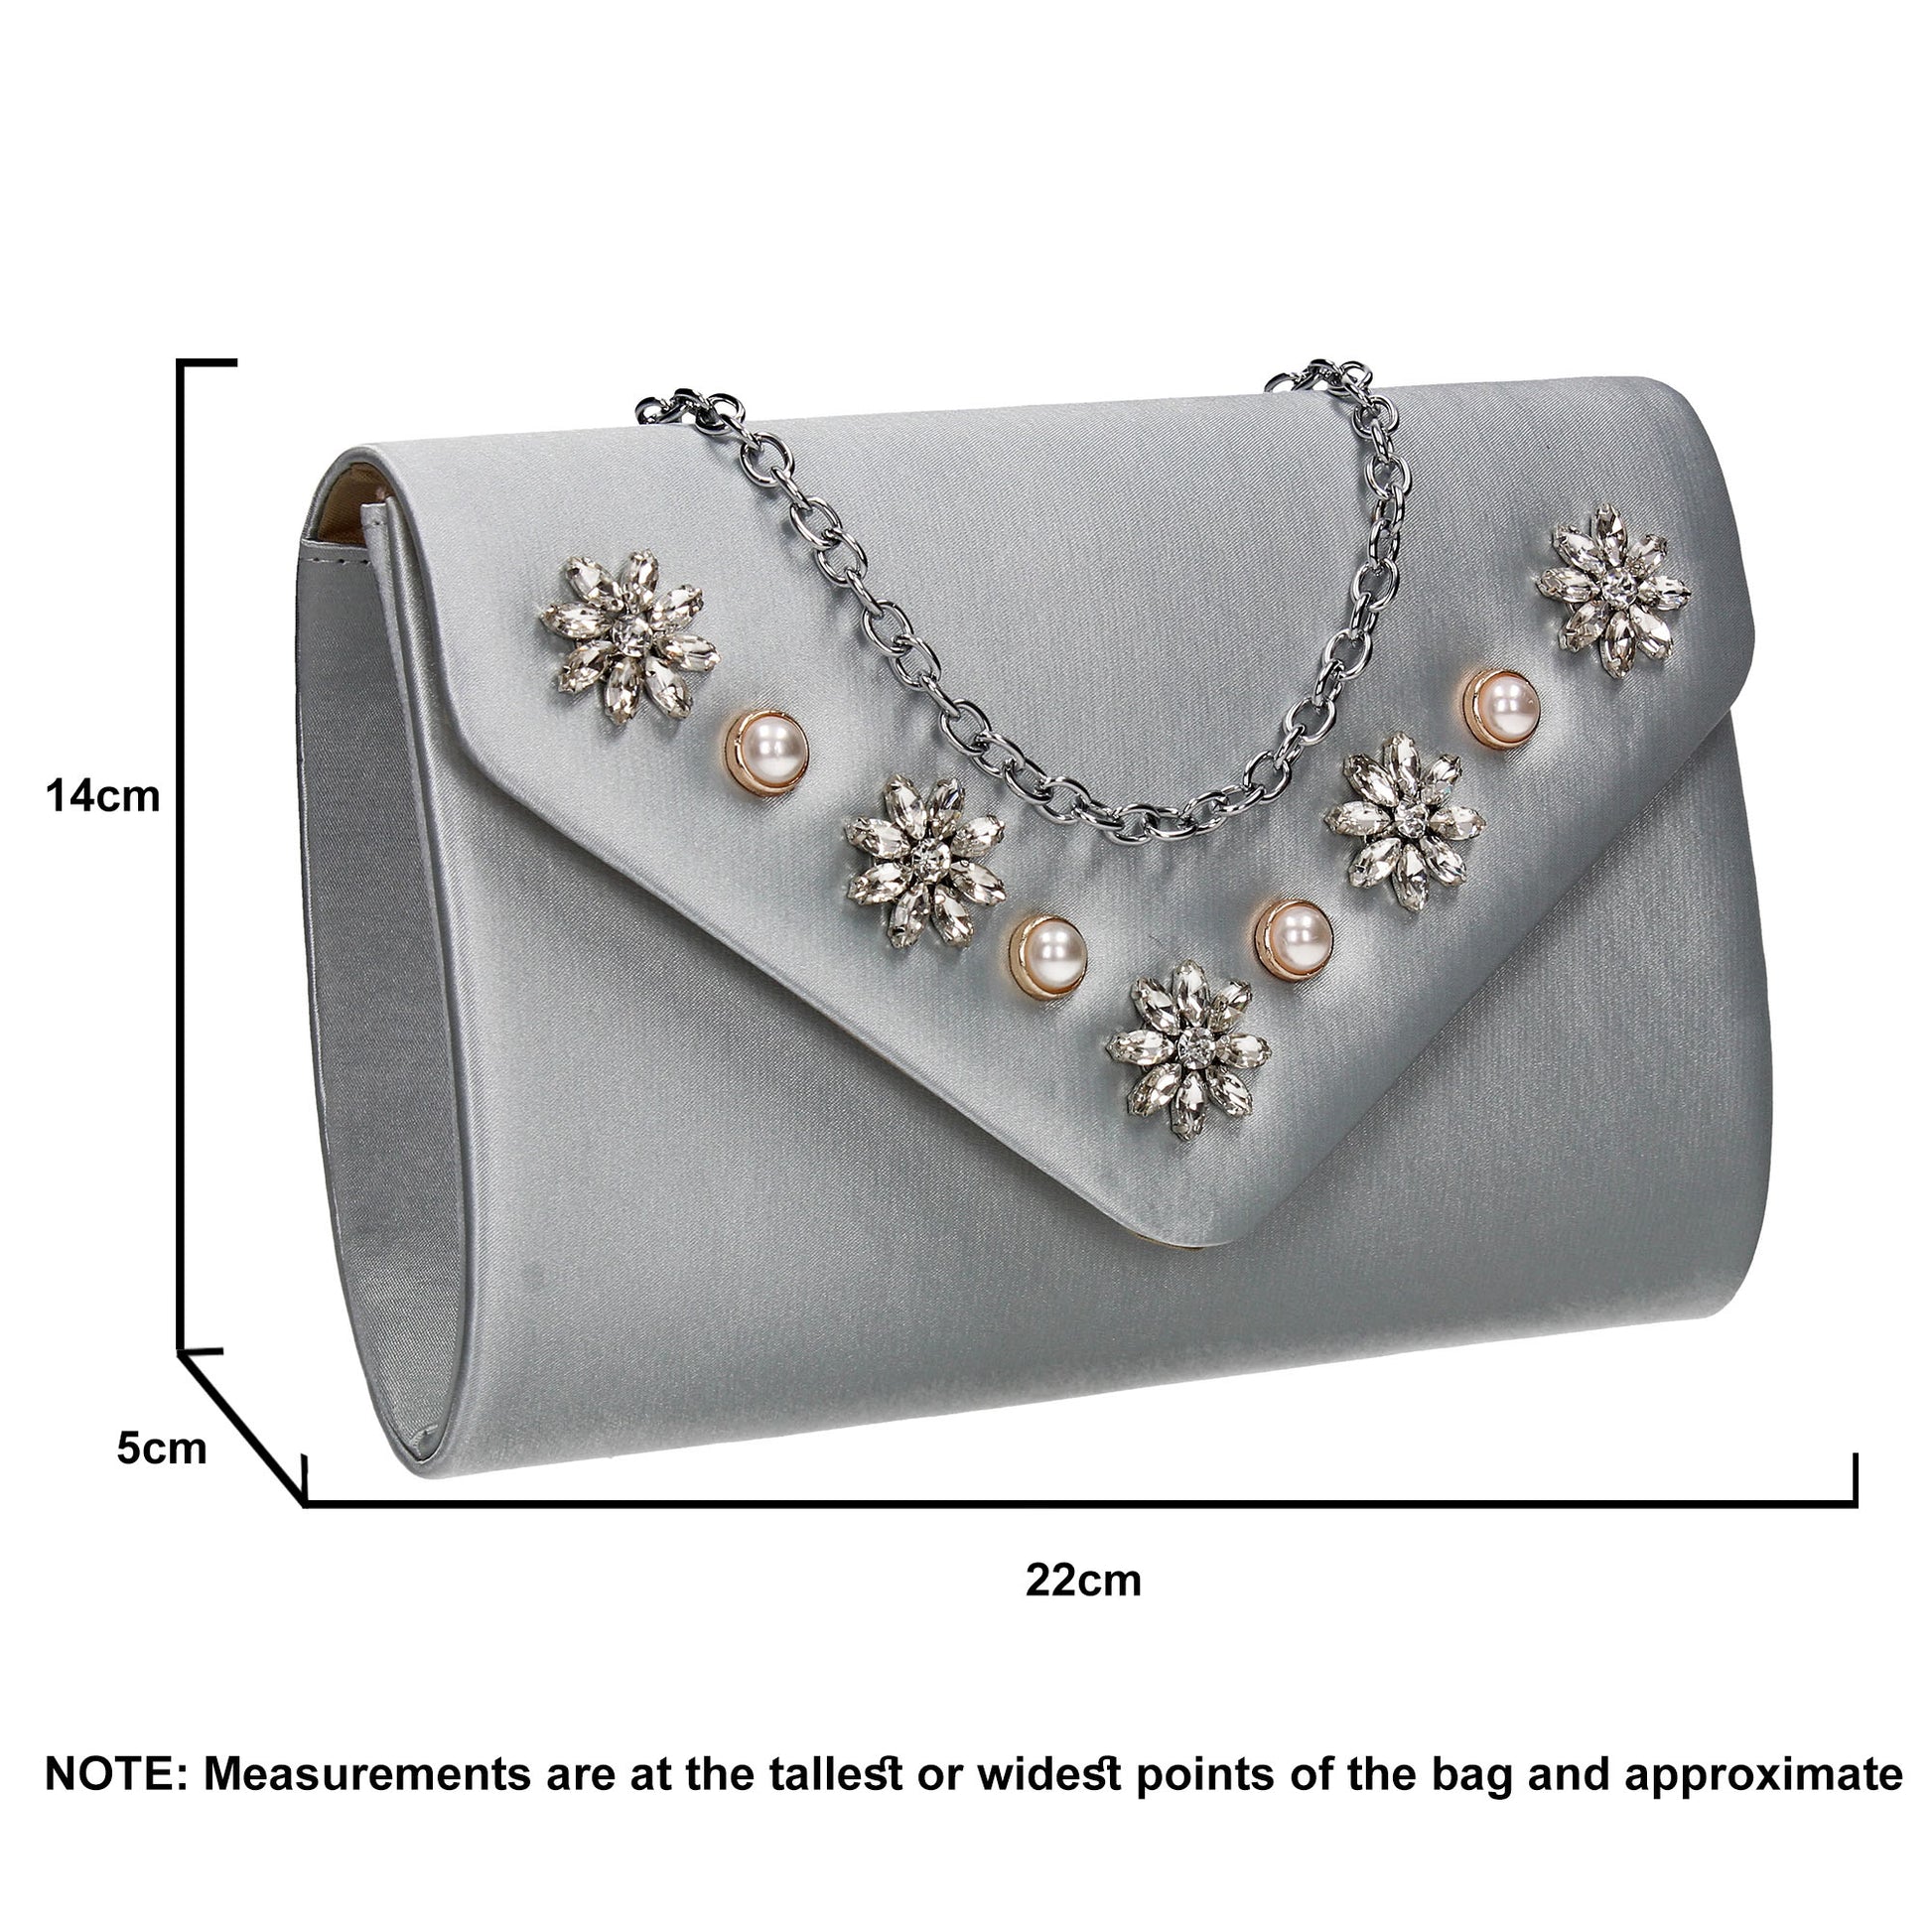 SWANKYSWANS Leila Clutch Bag Silver Cute Cheap Clutch Bag For Weddings School and Work